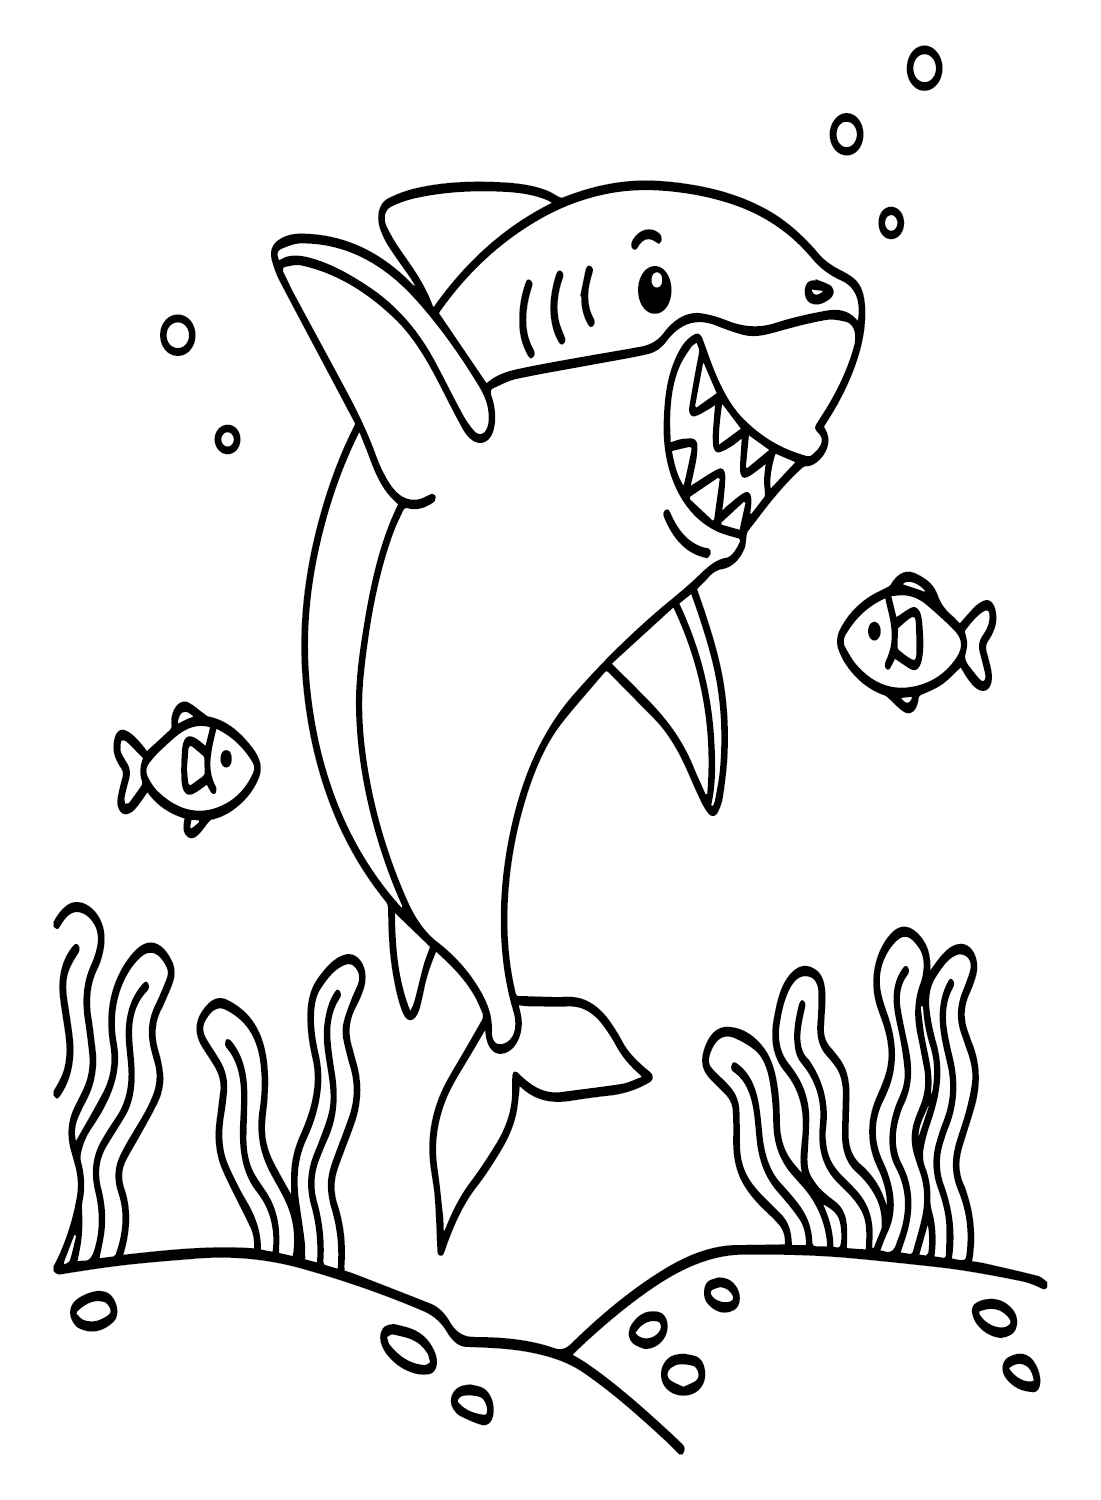 أوراق ملونة لسمك القرش الأبيض الكبير من القرش الأبيض العظيم